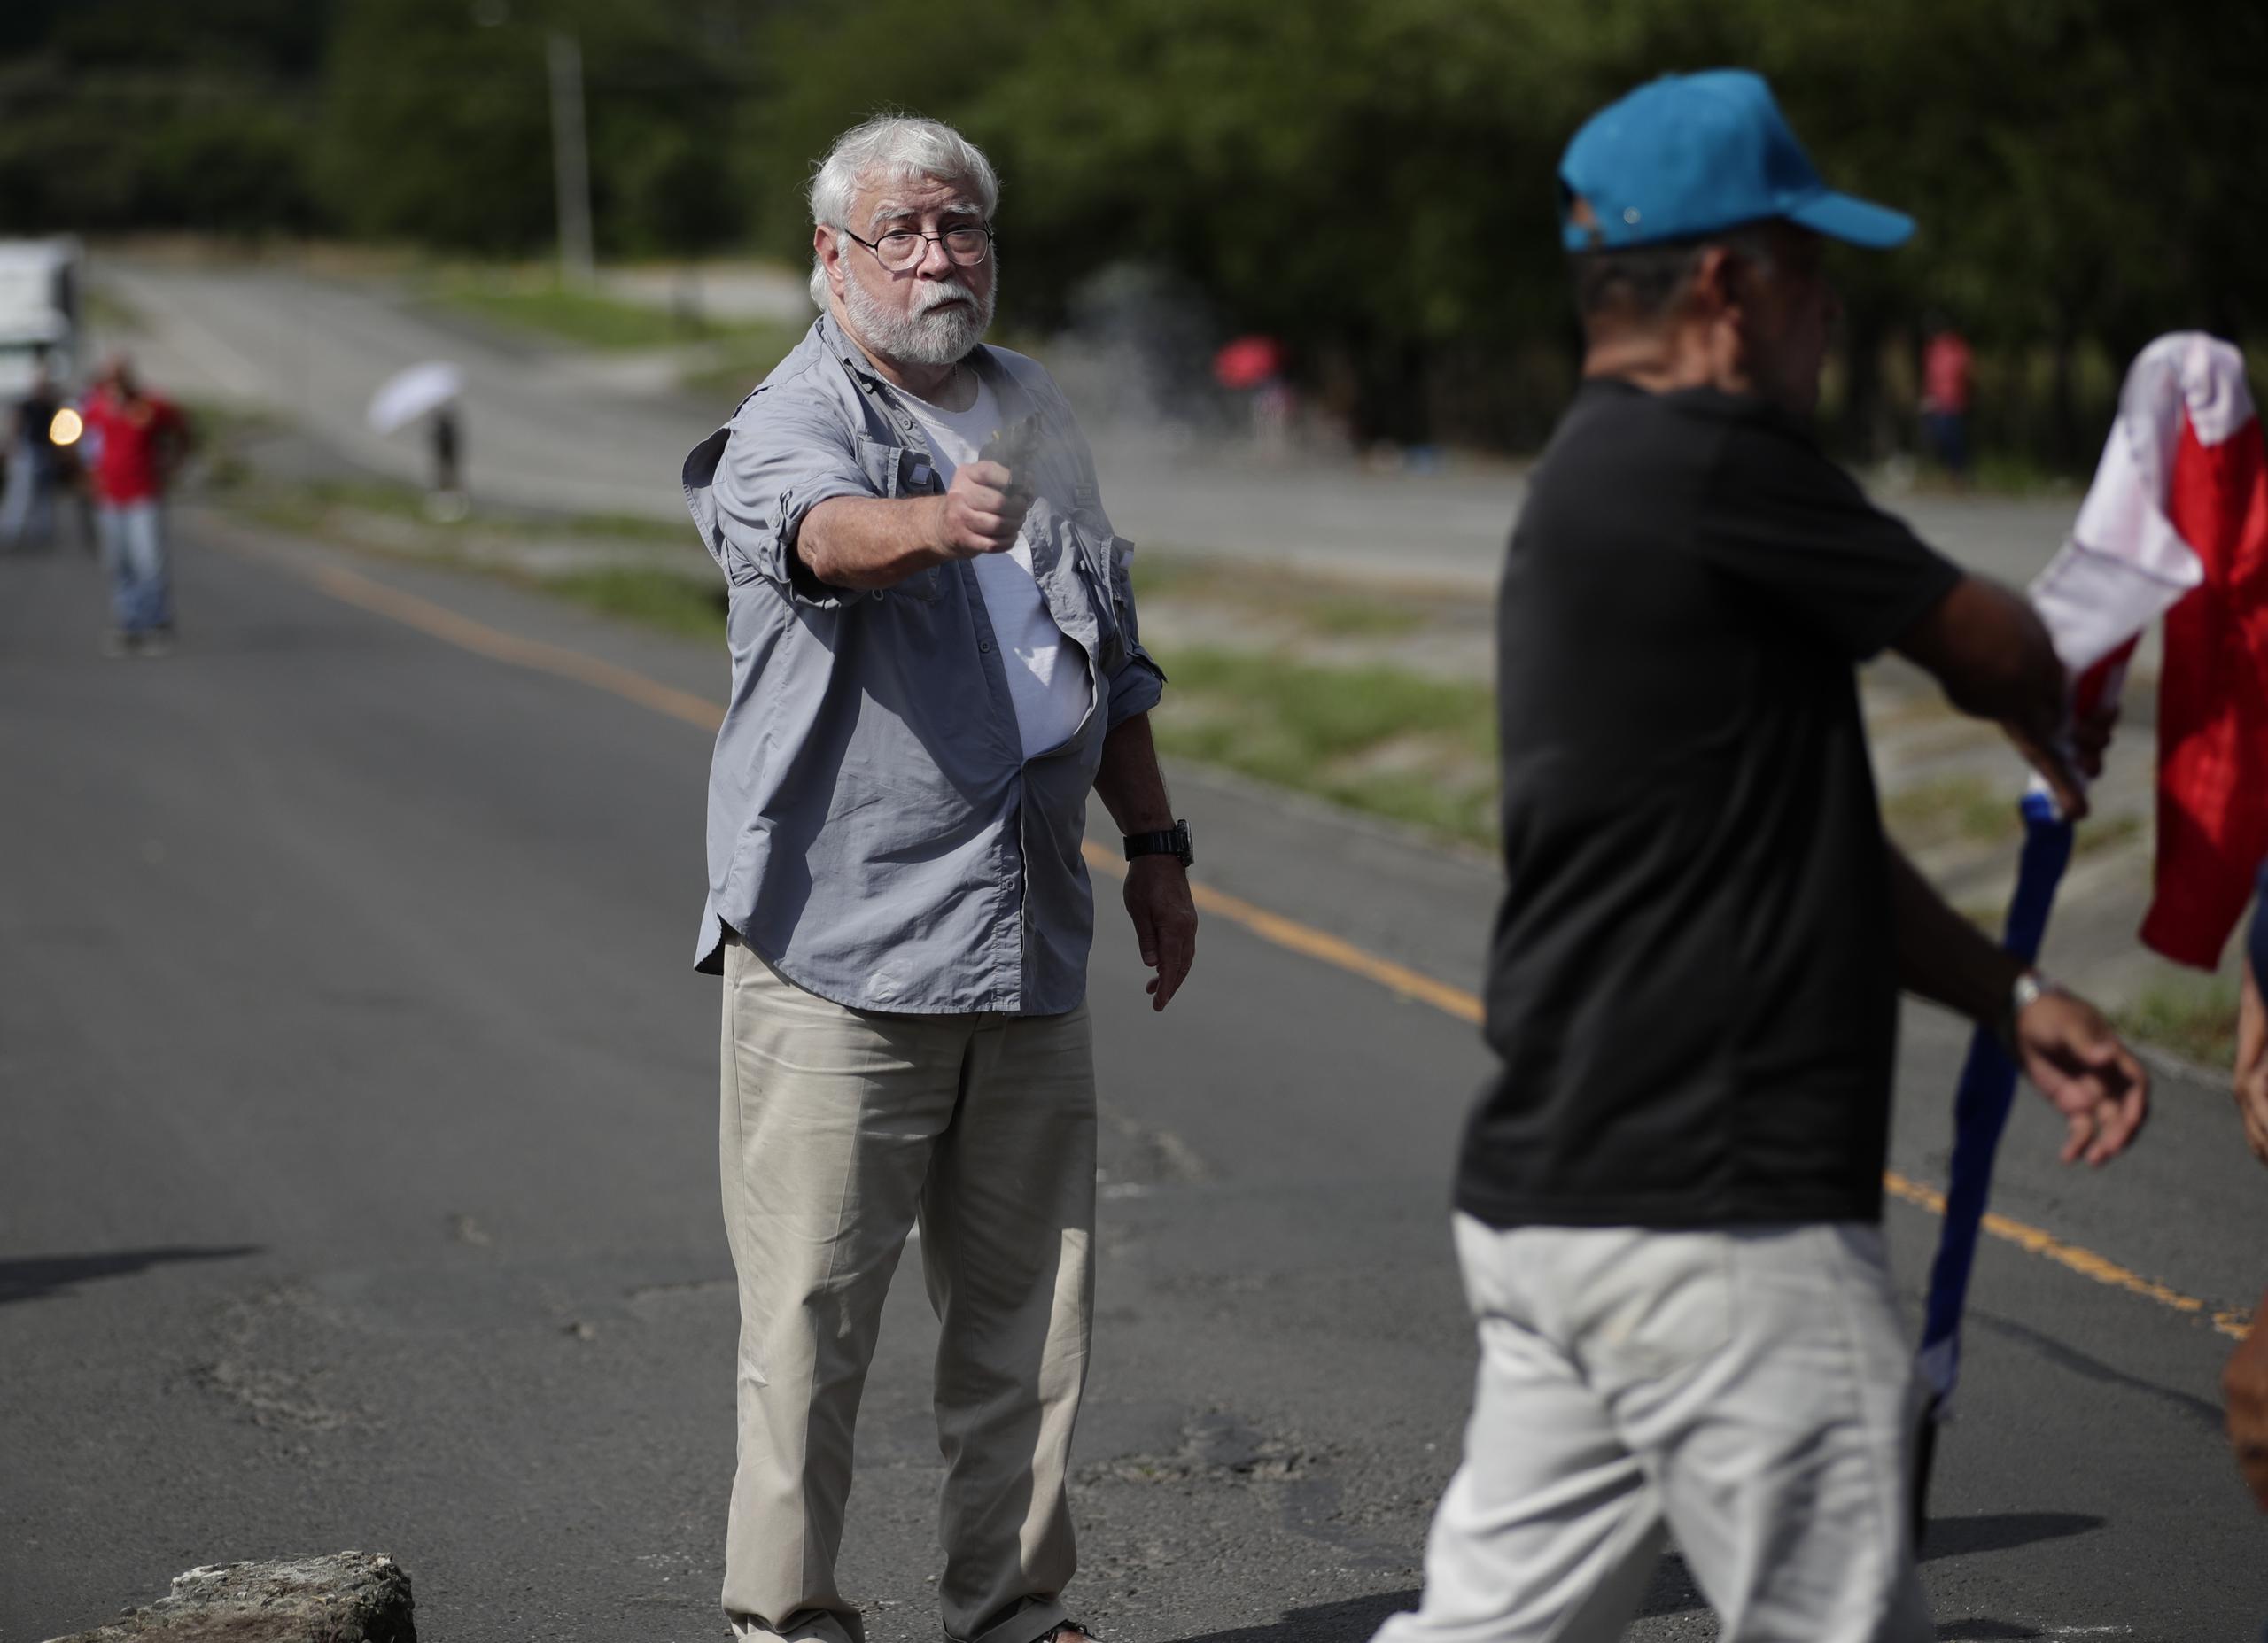 El incidente fue captado por periodistas que cubrían la protesta en Panamá.